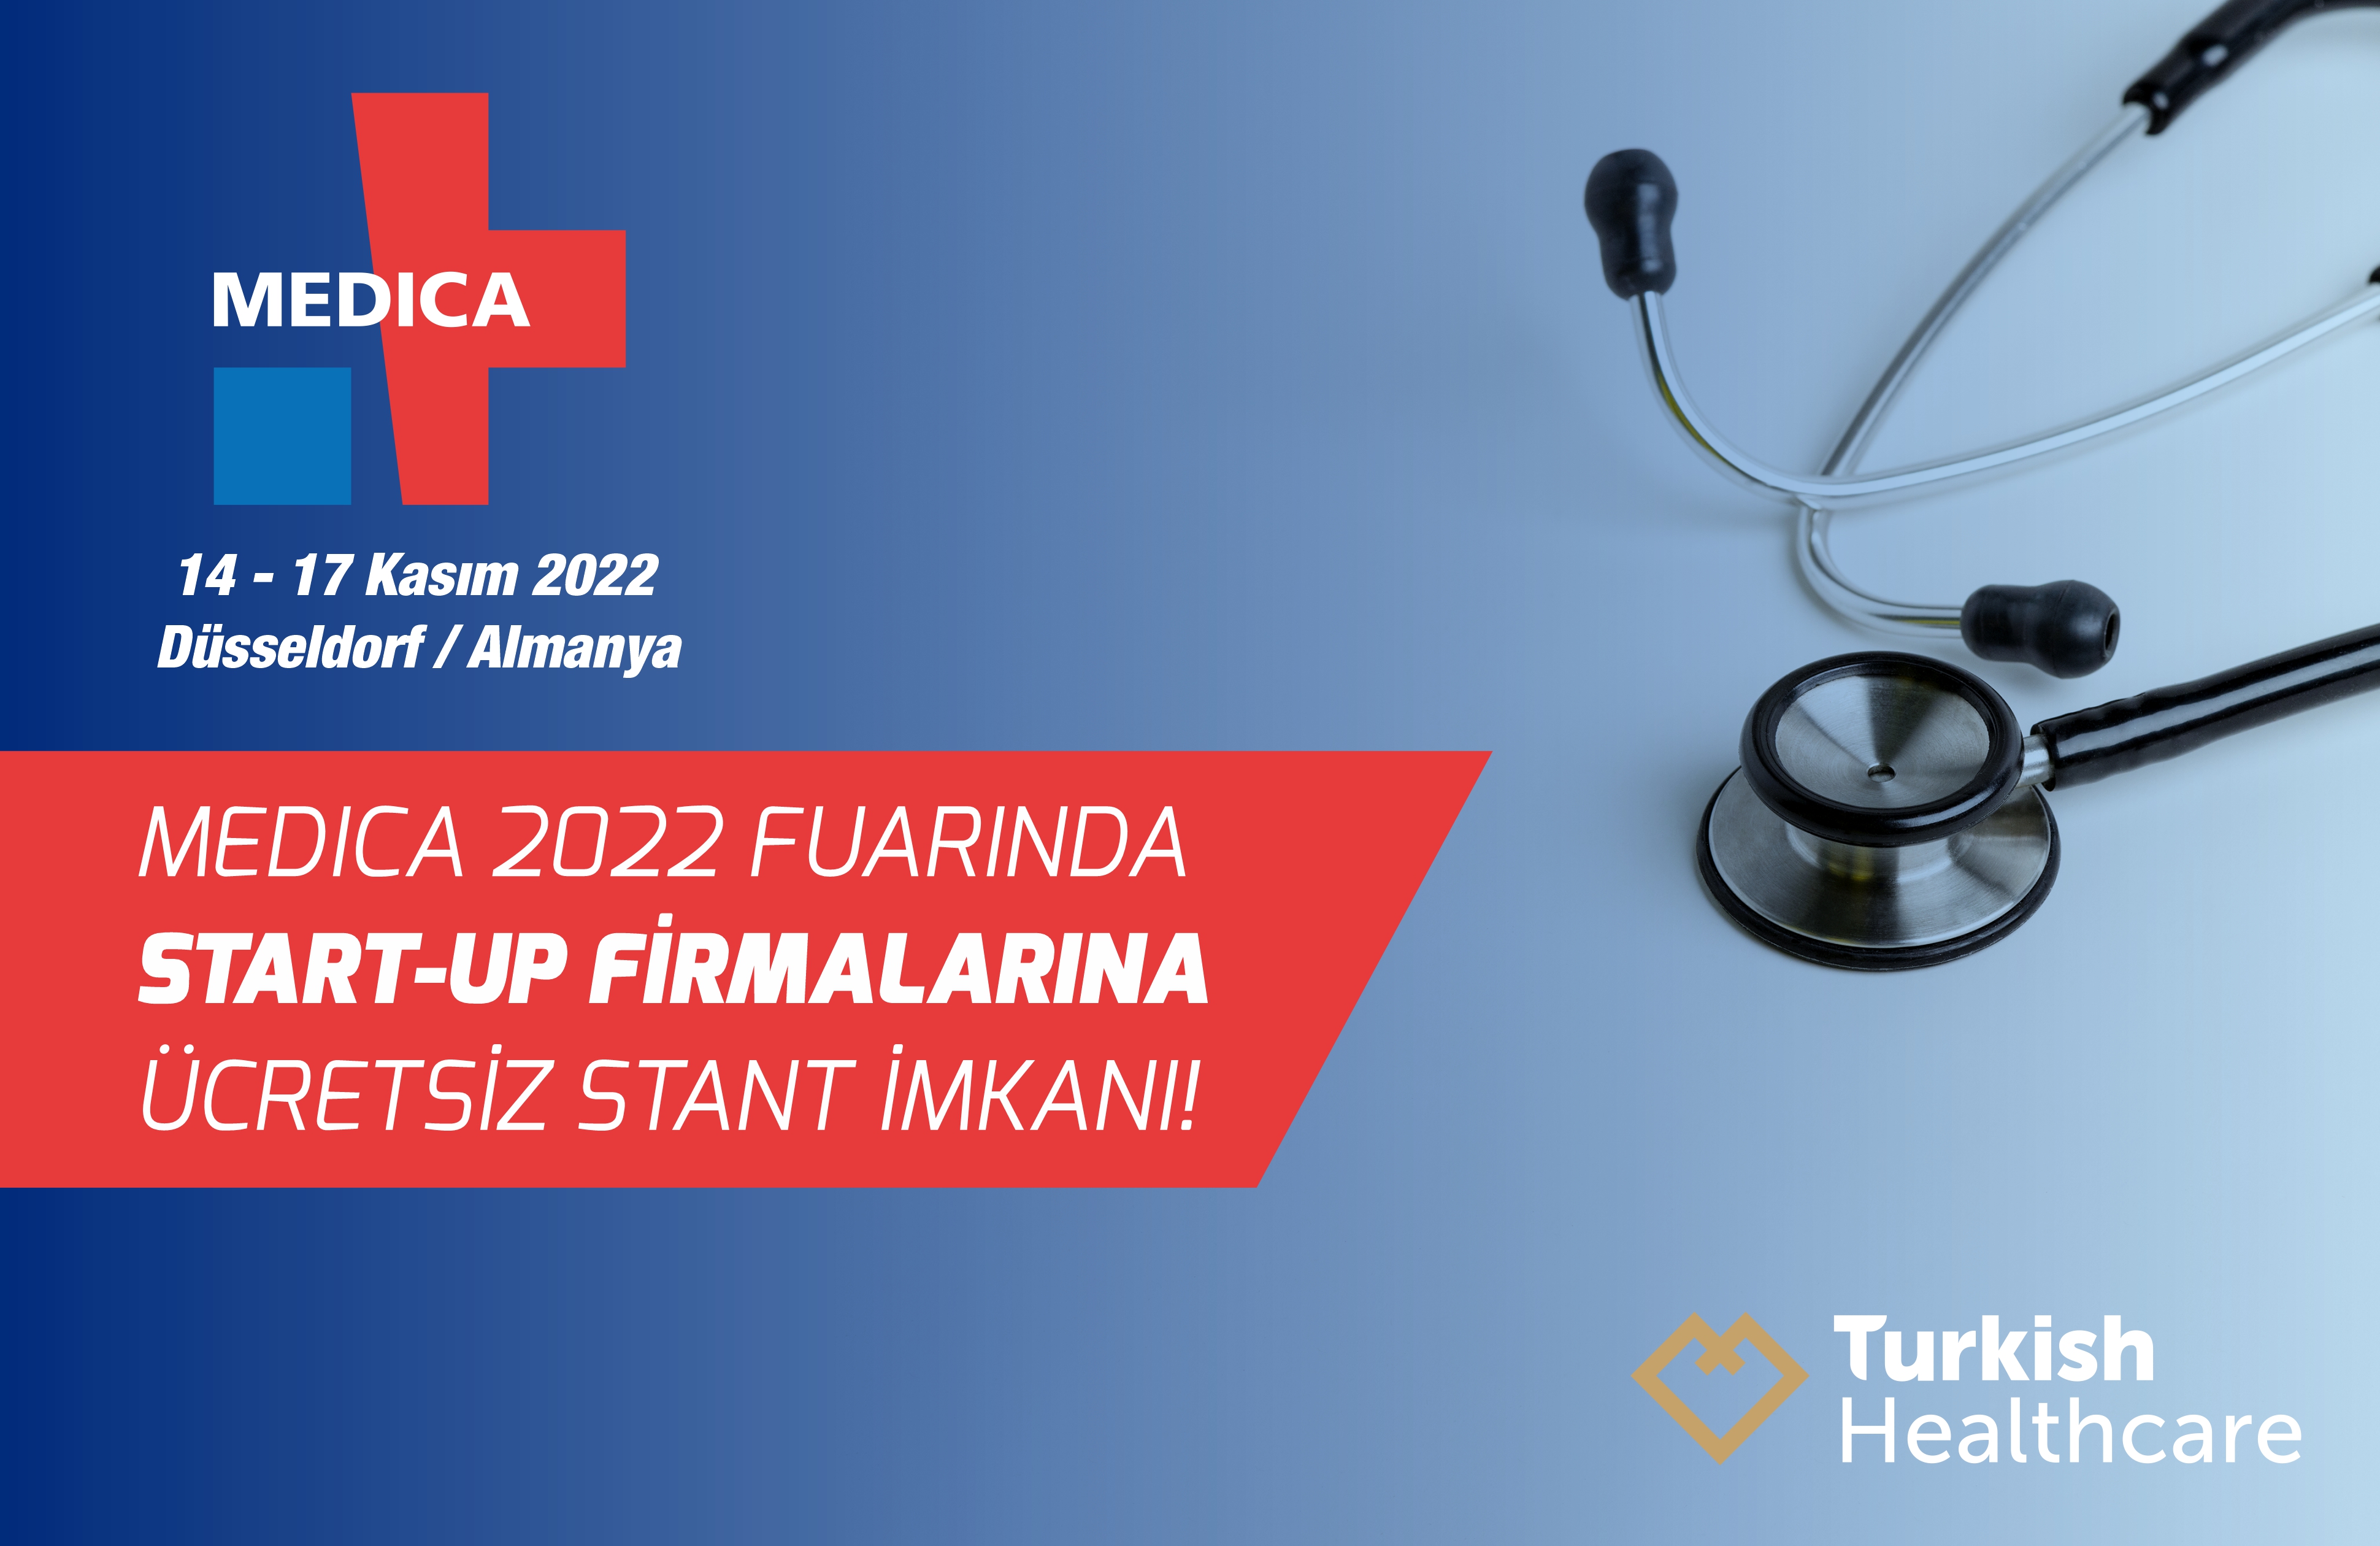 Medica 2022 Fuarında Start-Up Firmalarına Ücretsiz Stand İmkanı!